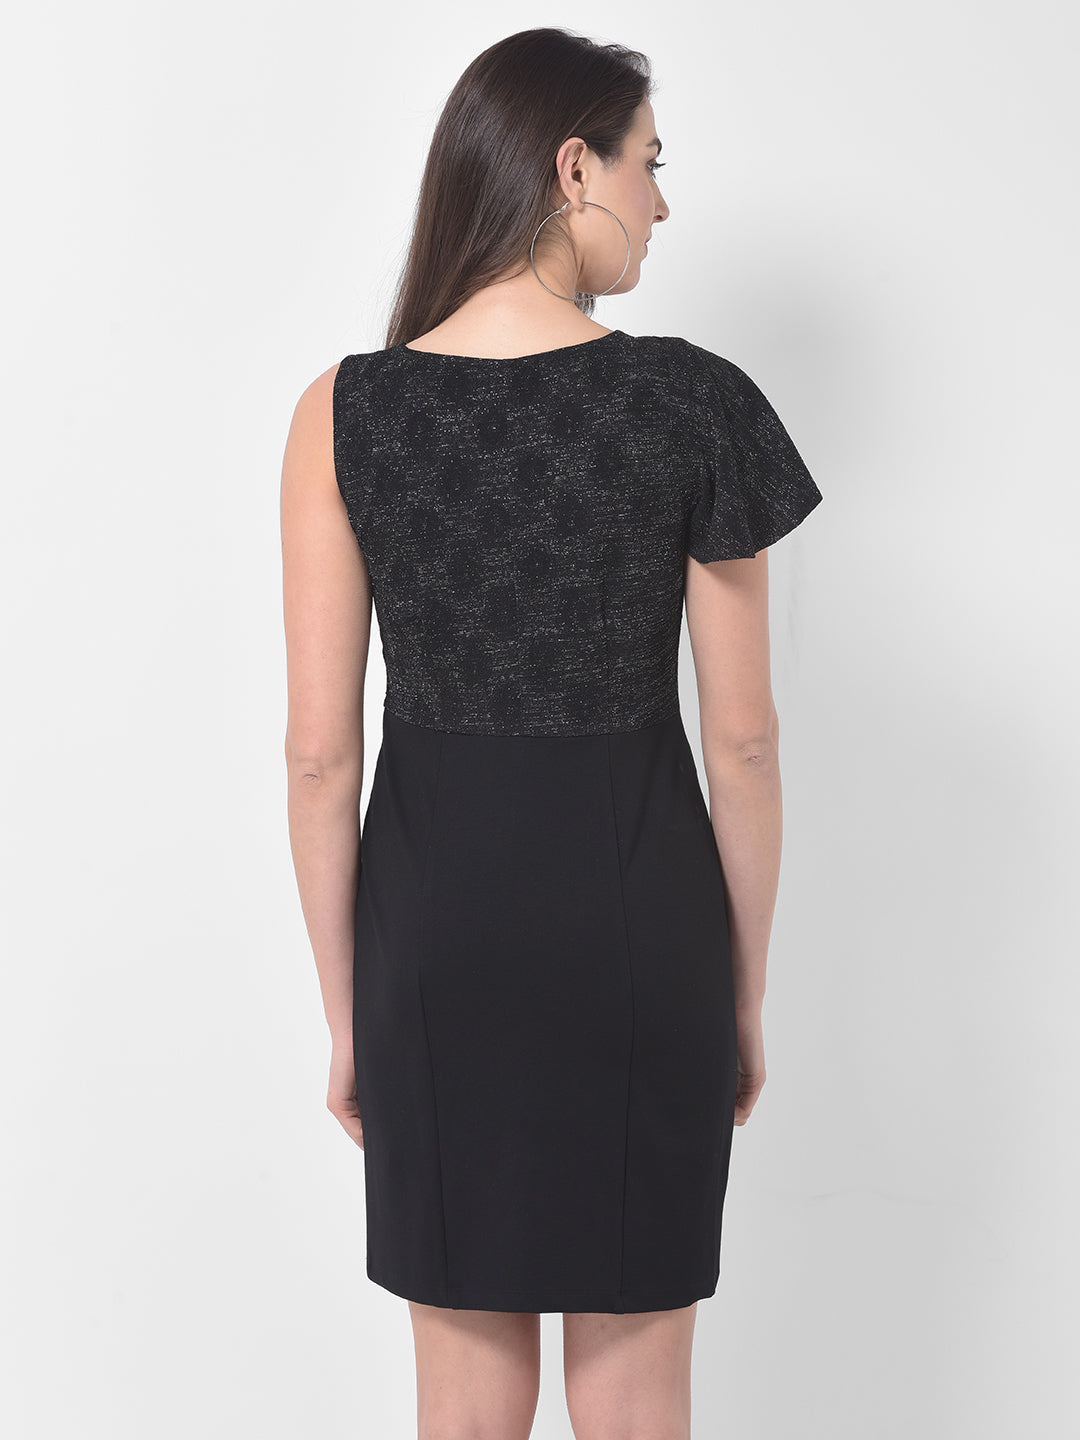 Black Sleeveless 2 Fir 1 Dress With Knit